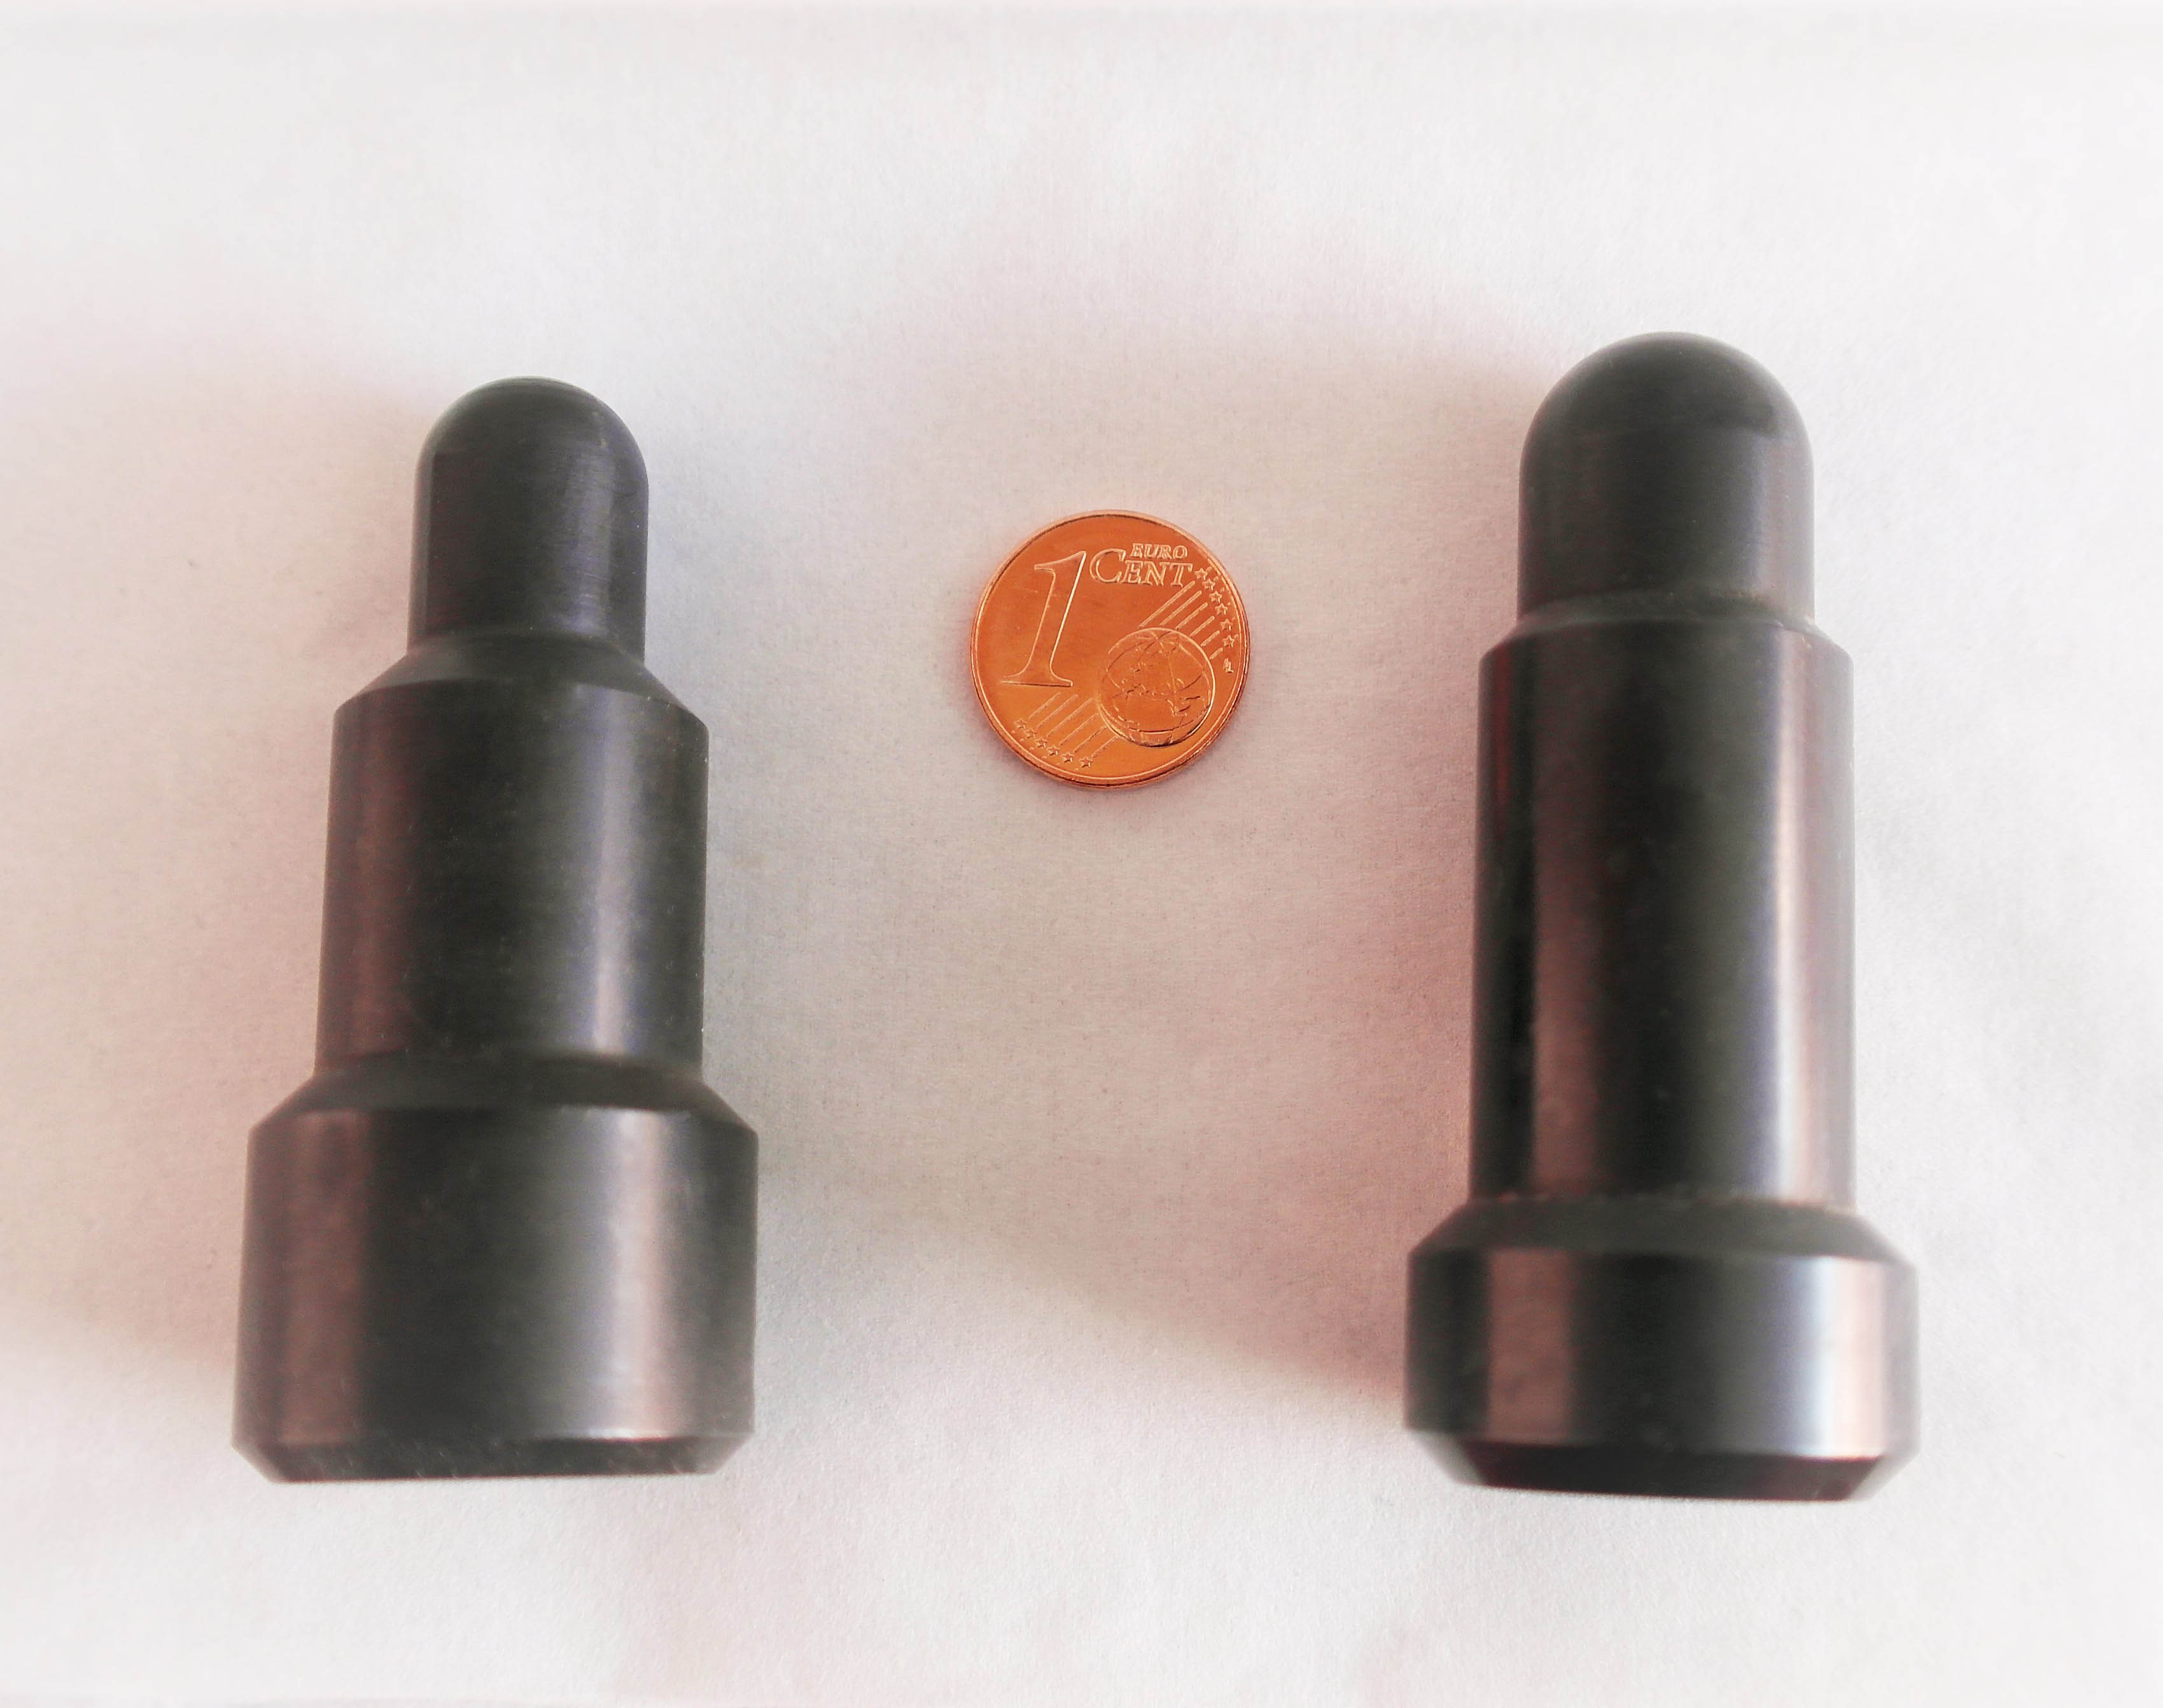 Die Abbildung zeigt zwei unterschiedliche Prüfstempel im Größenvergleich mit einem 1 Euro-Cent Stück. Der dünnste Teil der Prüfdorne ist rund hat ungefähr den Durchmesser der Münze.